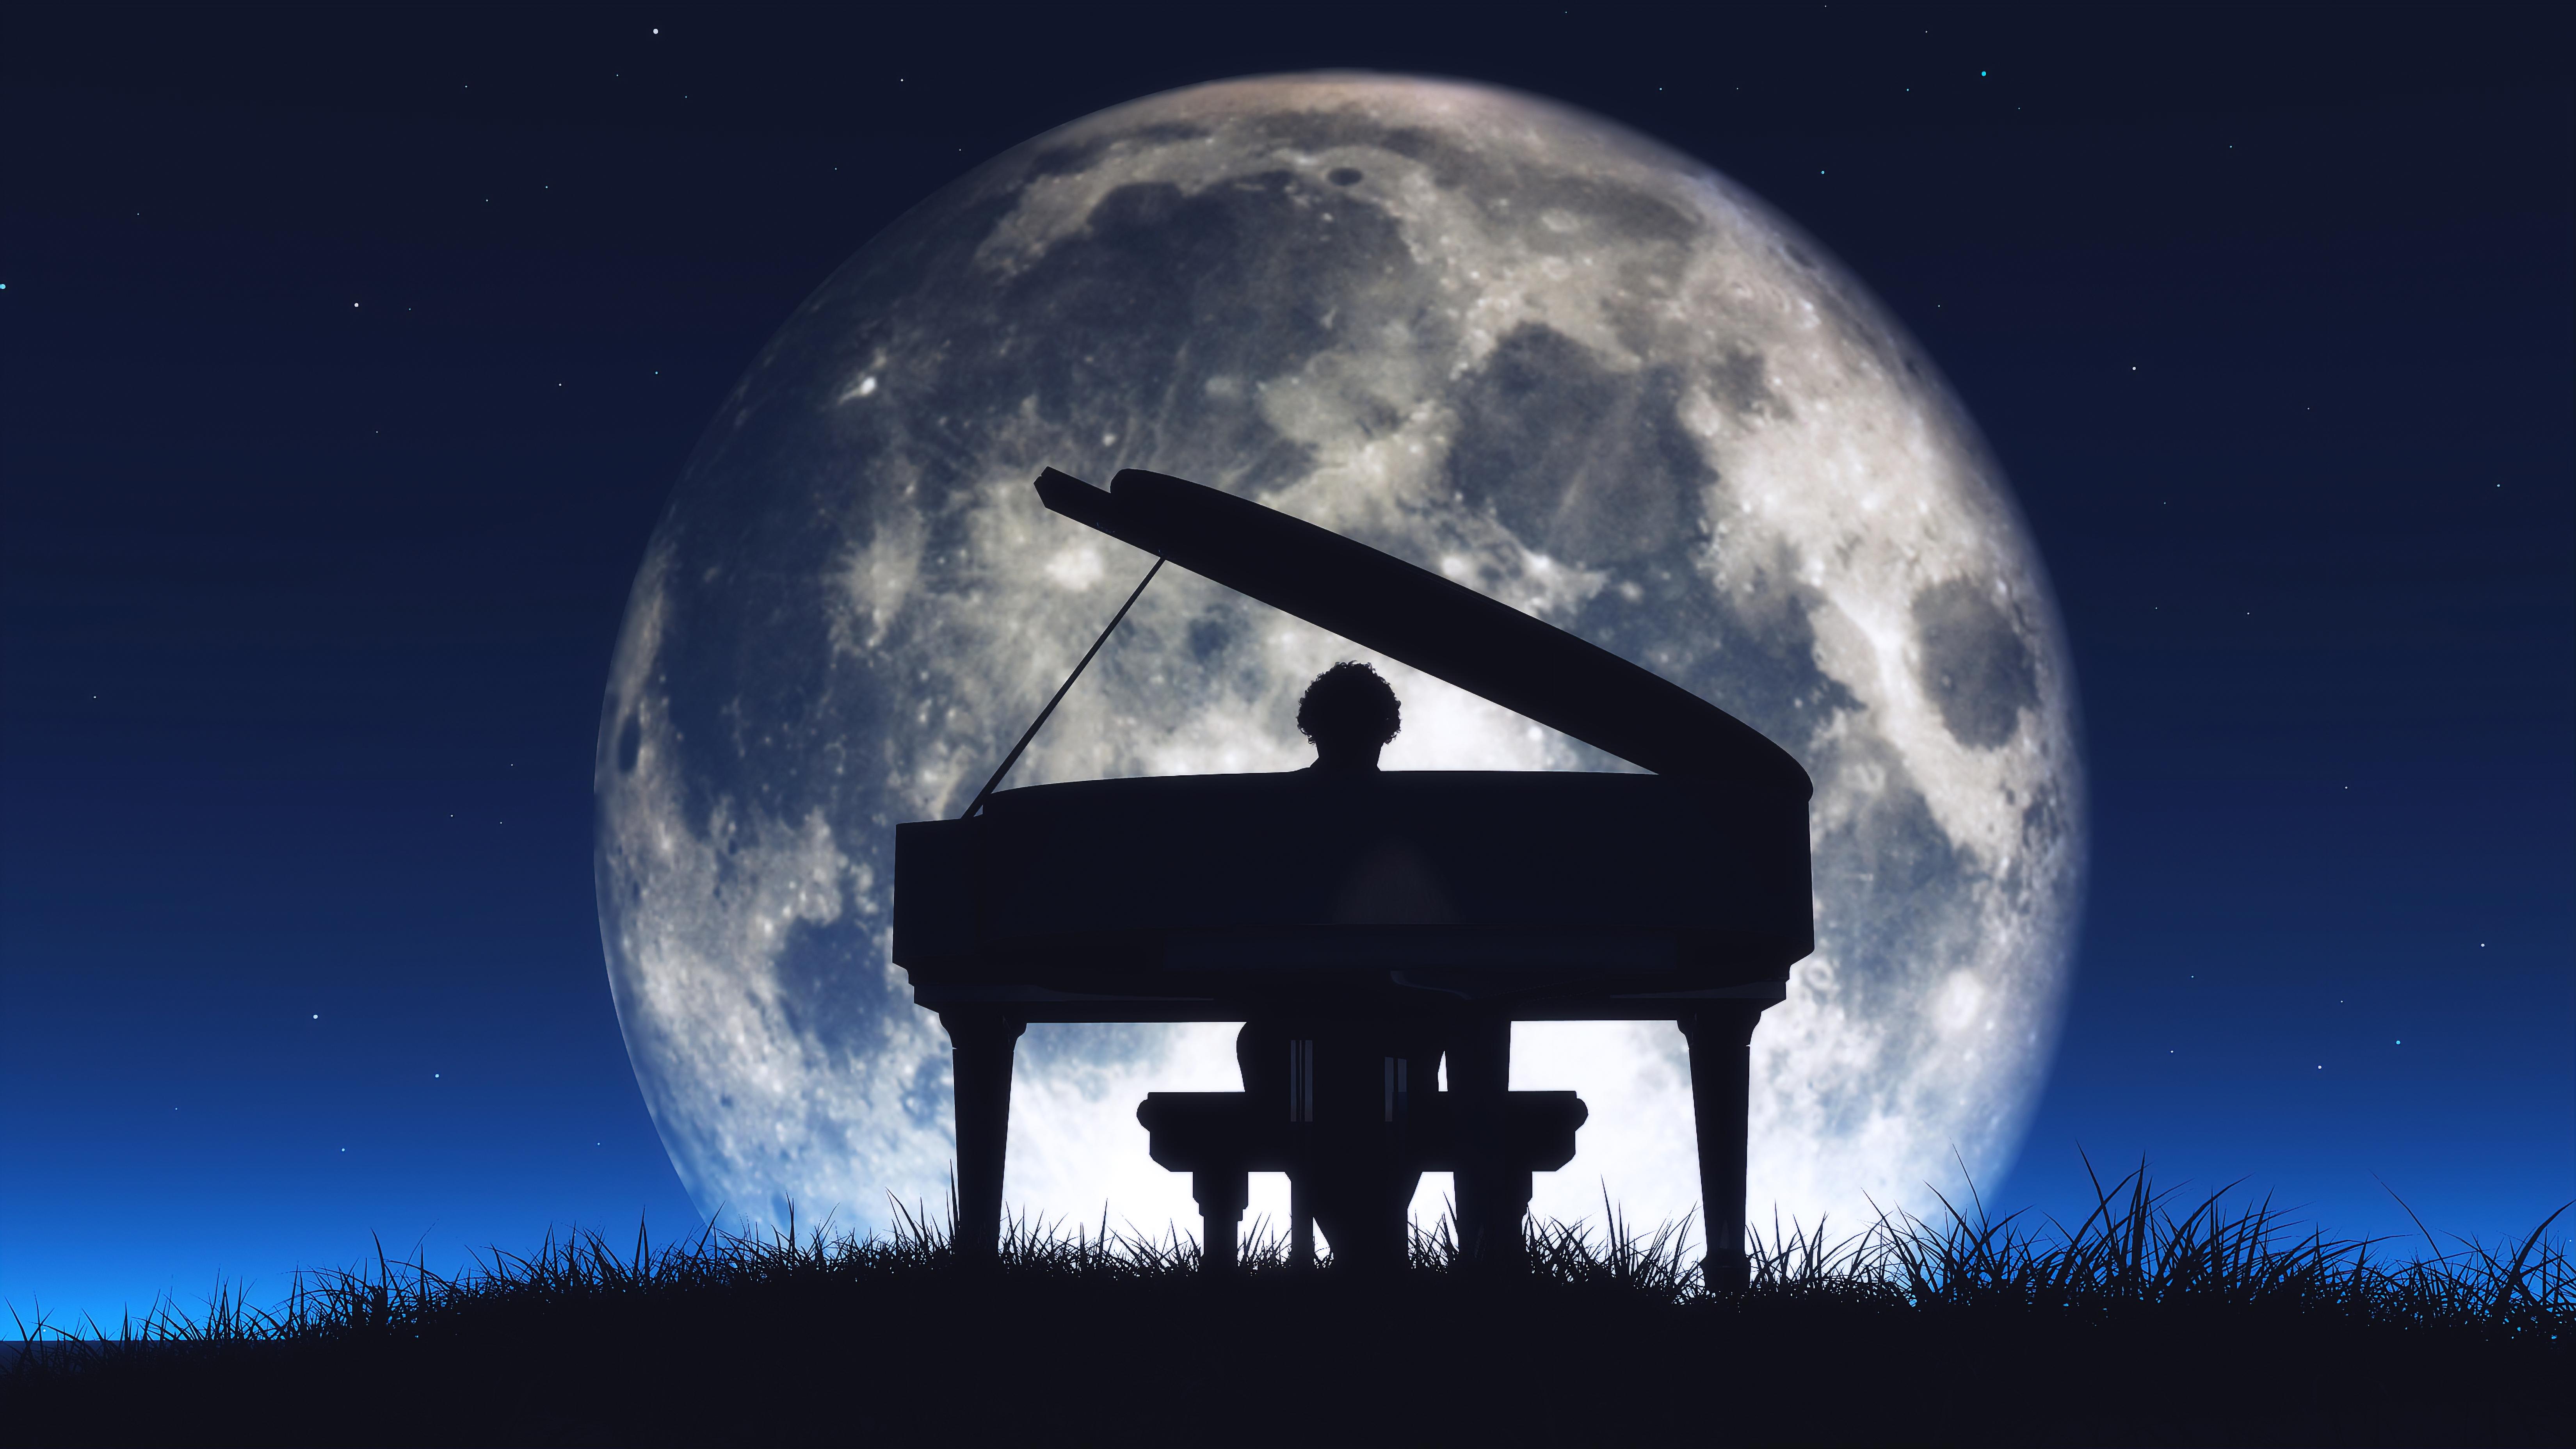 Лунная соната бетховена слушать полностью. Композиции Бетховена Лунная Соната. Рисунок к лунной сонате Бетховена. Иллюстрации к "лунной сонате" л.Бетховена.. Рояль на фоне Луны.